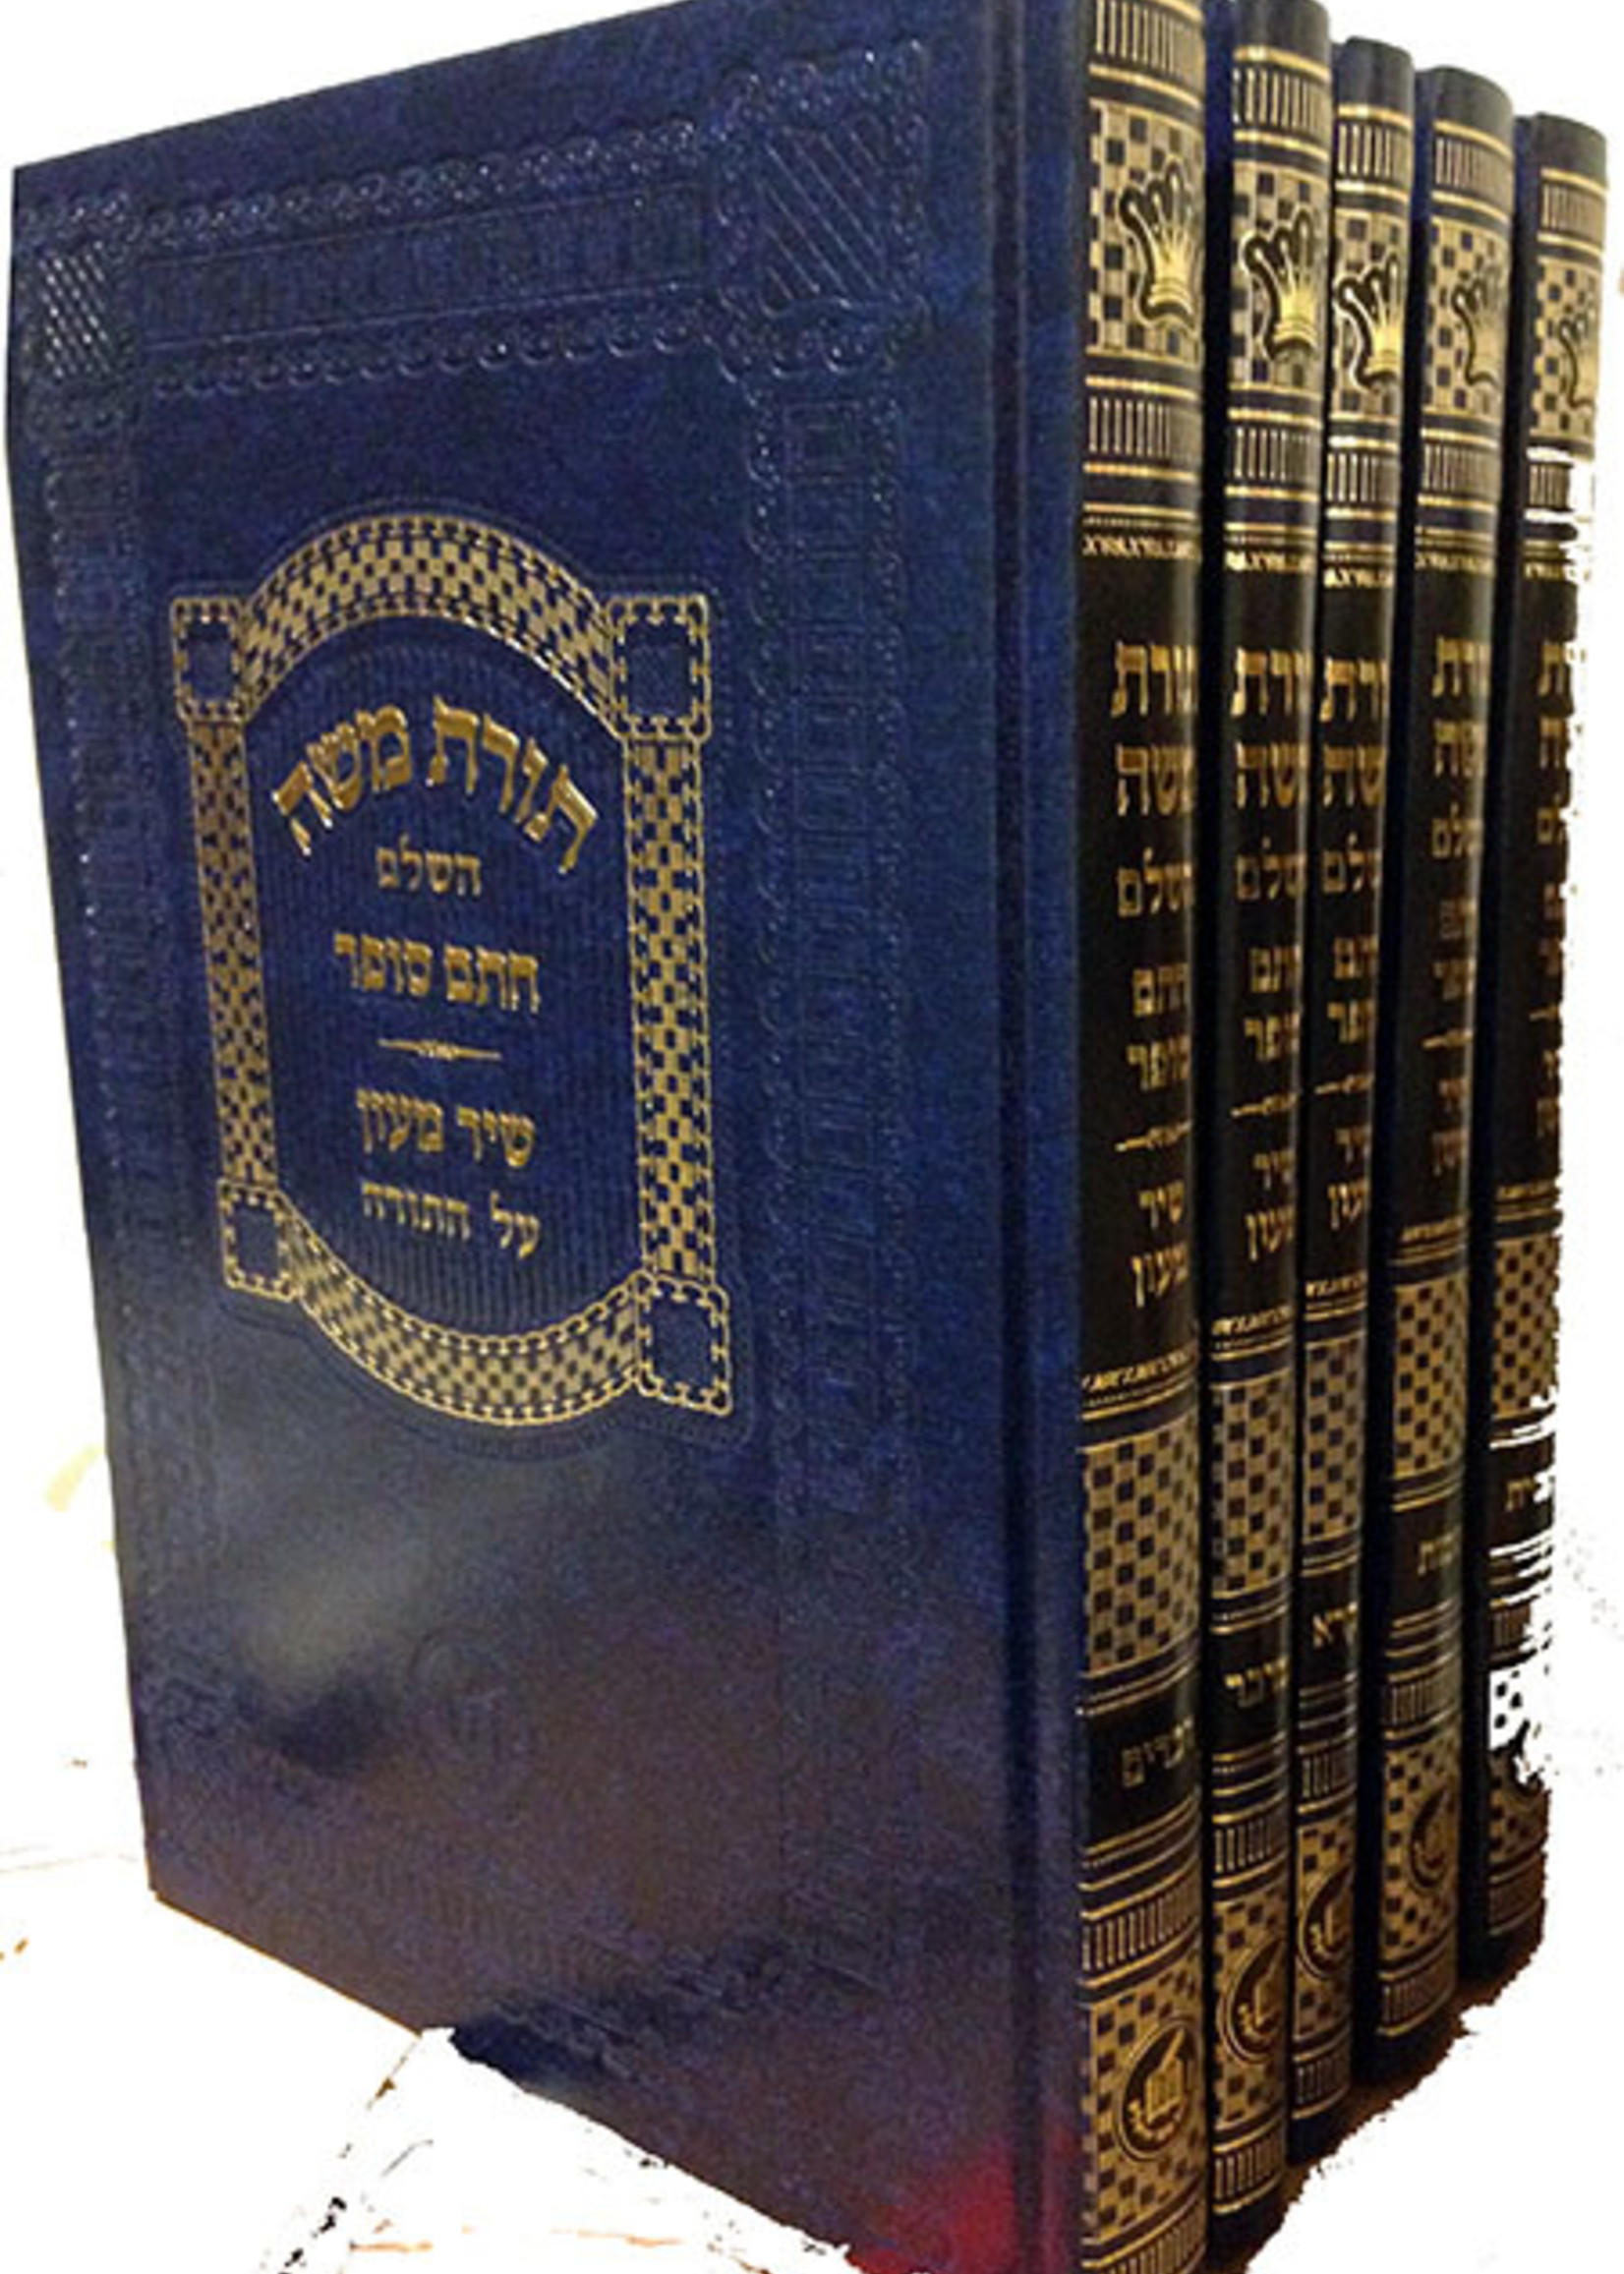 Torat Moshe - Chatam Sofer al HaTorah with Shir Maon (5 vol.) /   תורת משה - חתם סופר עה"ת - שיר מעון - ה"כ